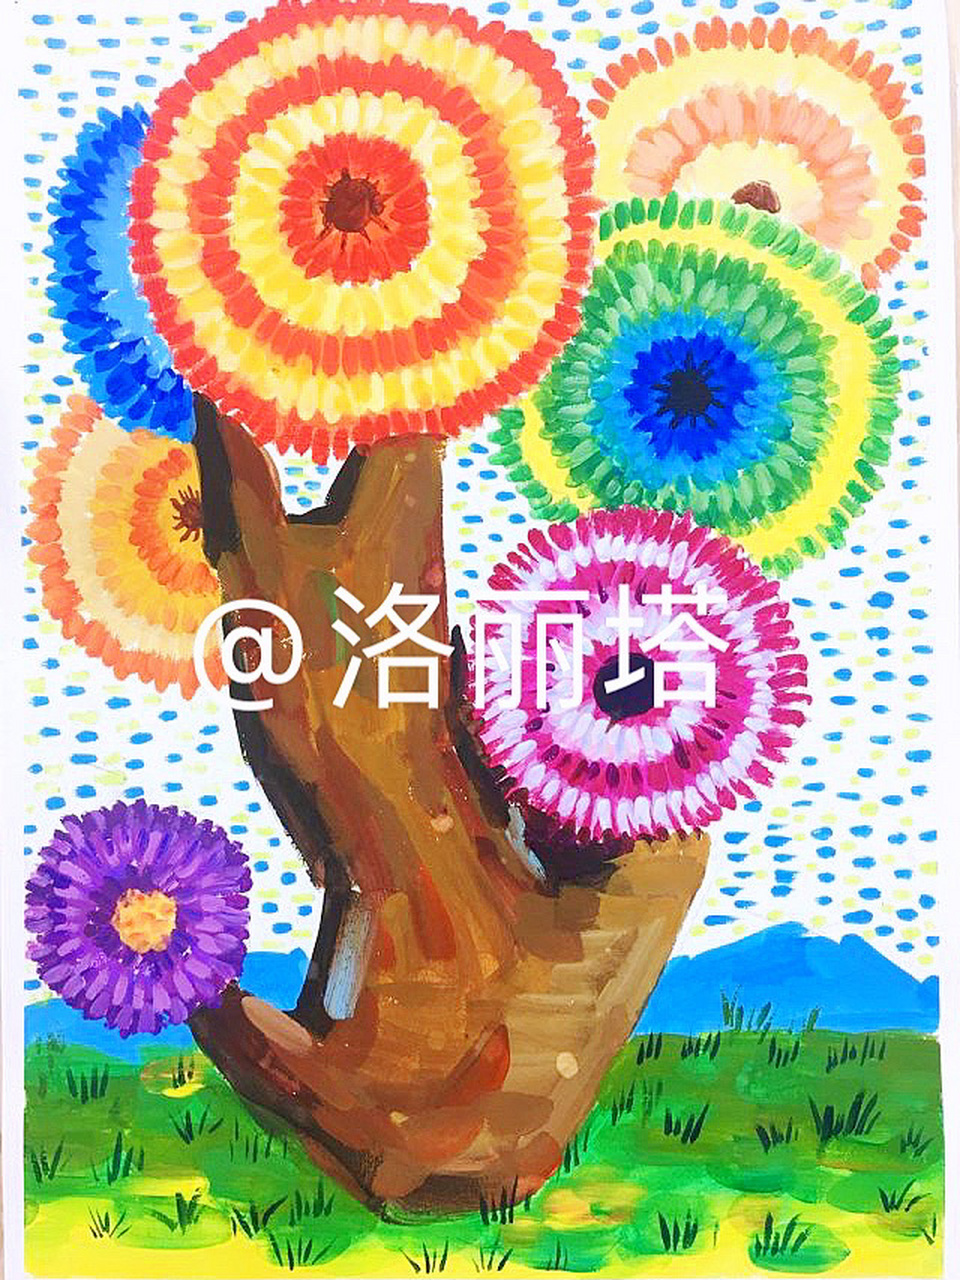 儿童水粉画作品《七彩太阳树》 水粉画 临摹请标明出处 